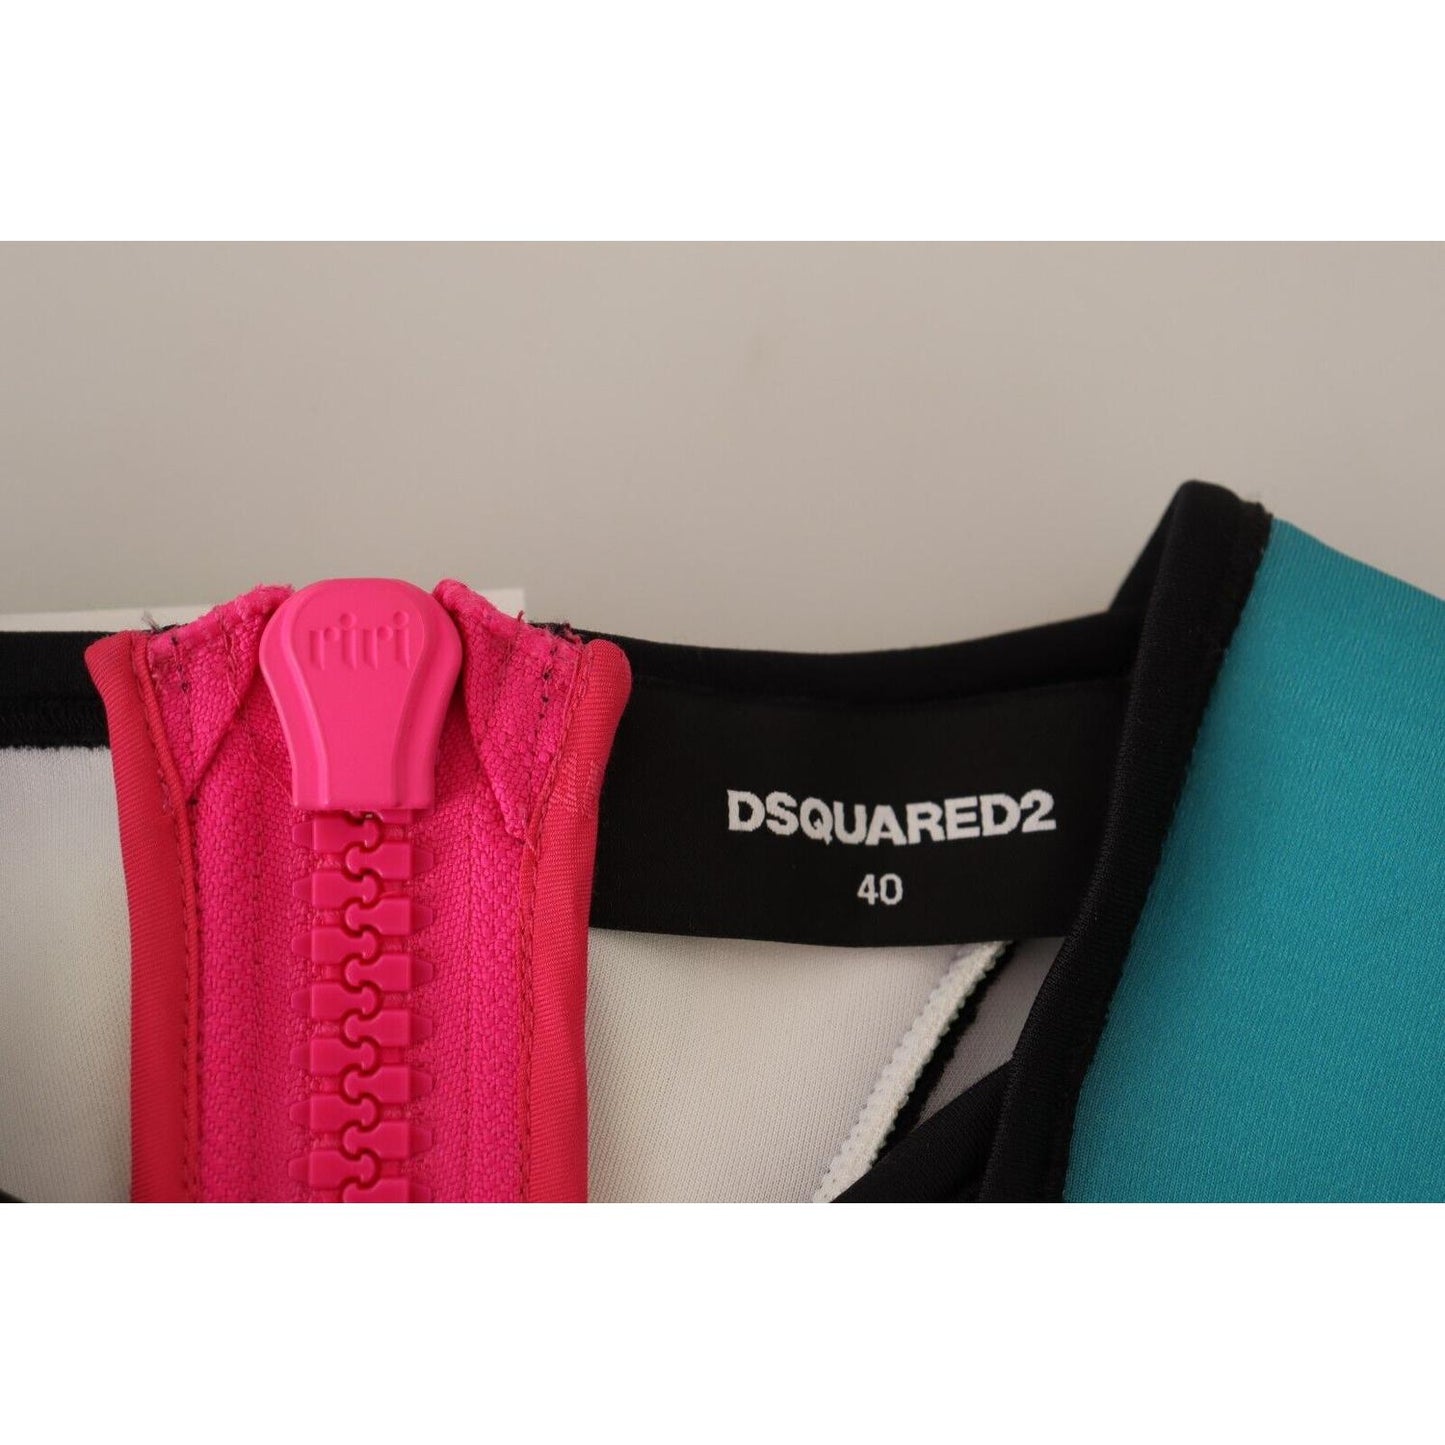 Dsquared²Multicolor Silk Sleeveless Pleated Knee Length DressMcRichard Designer Brands£309.00